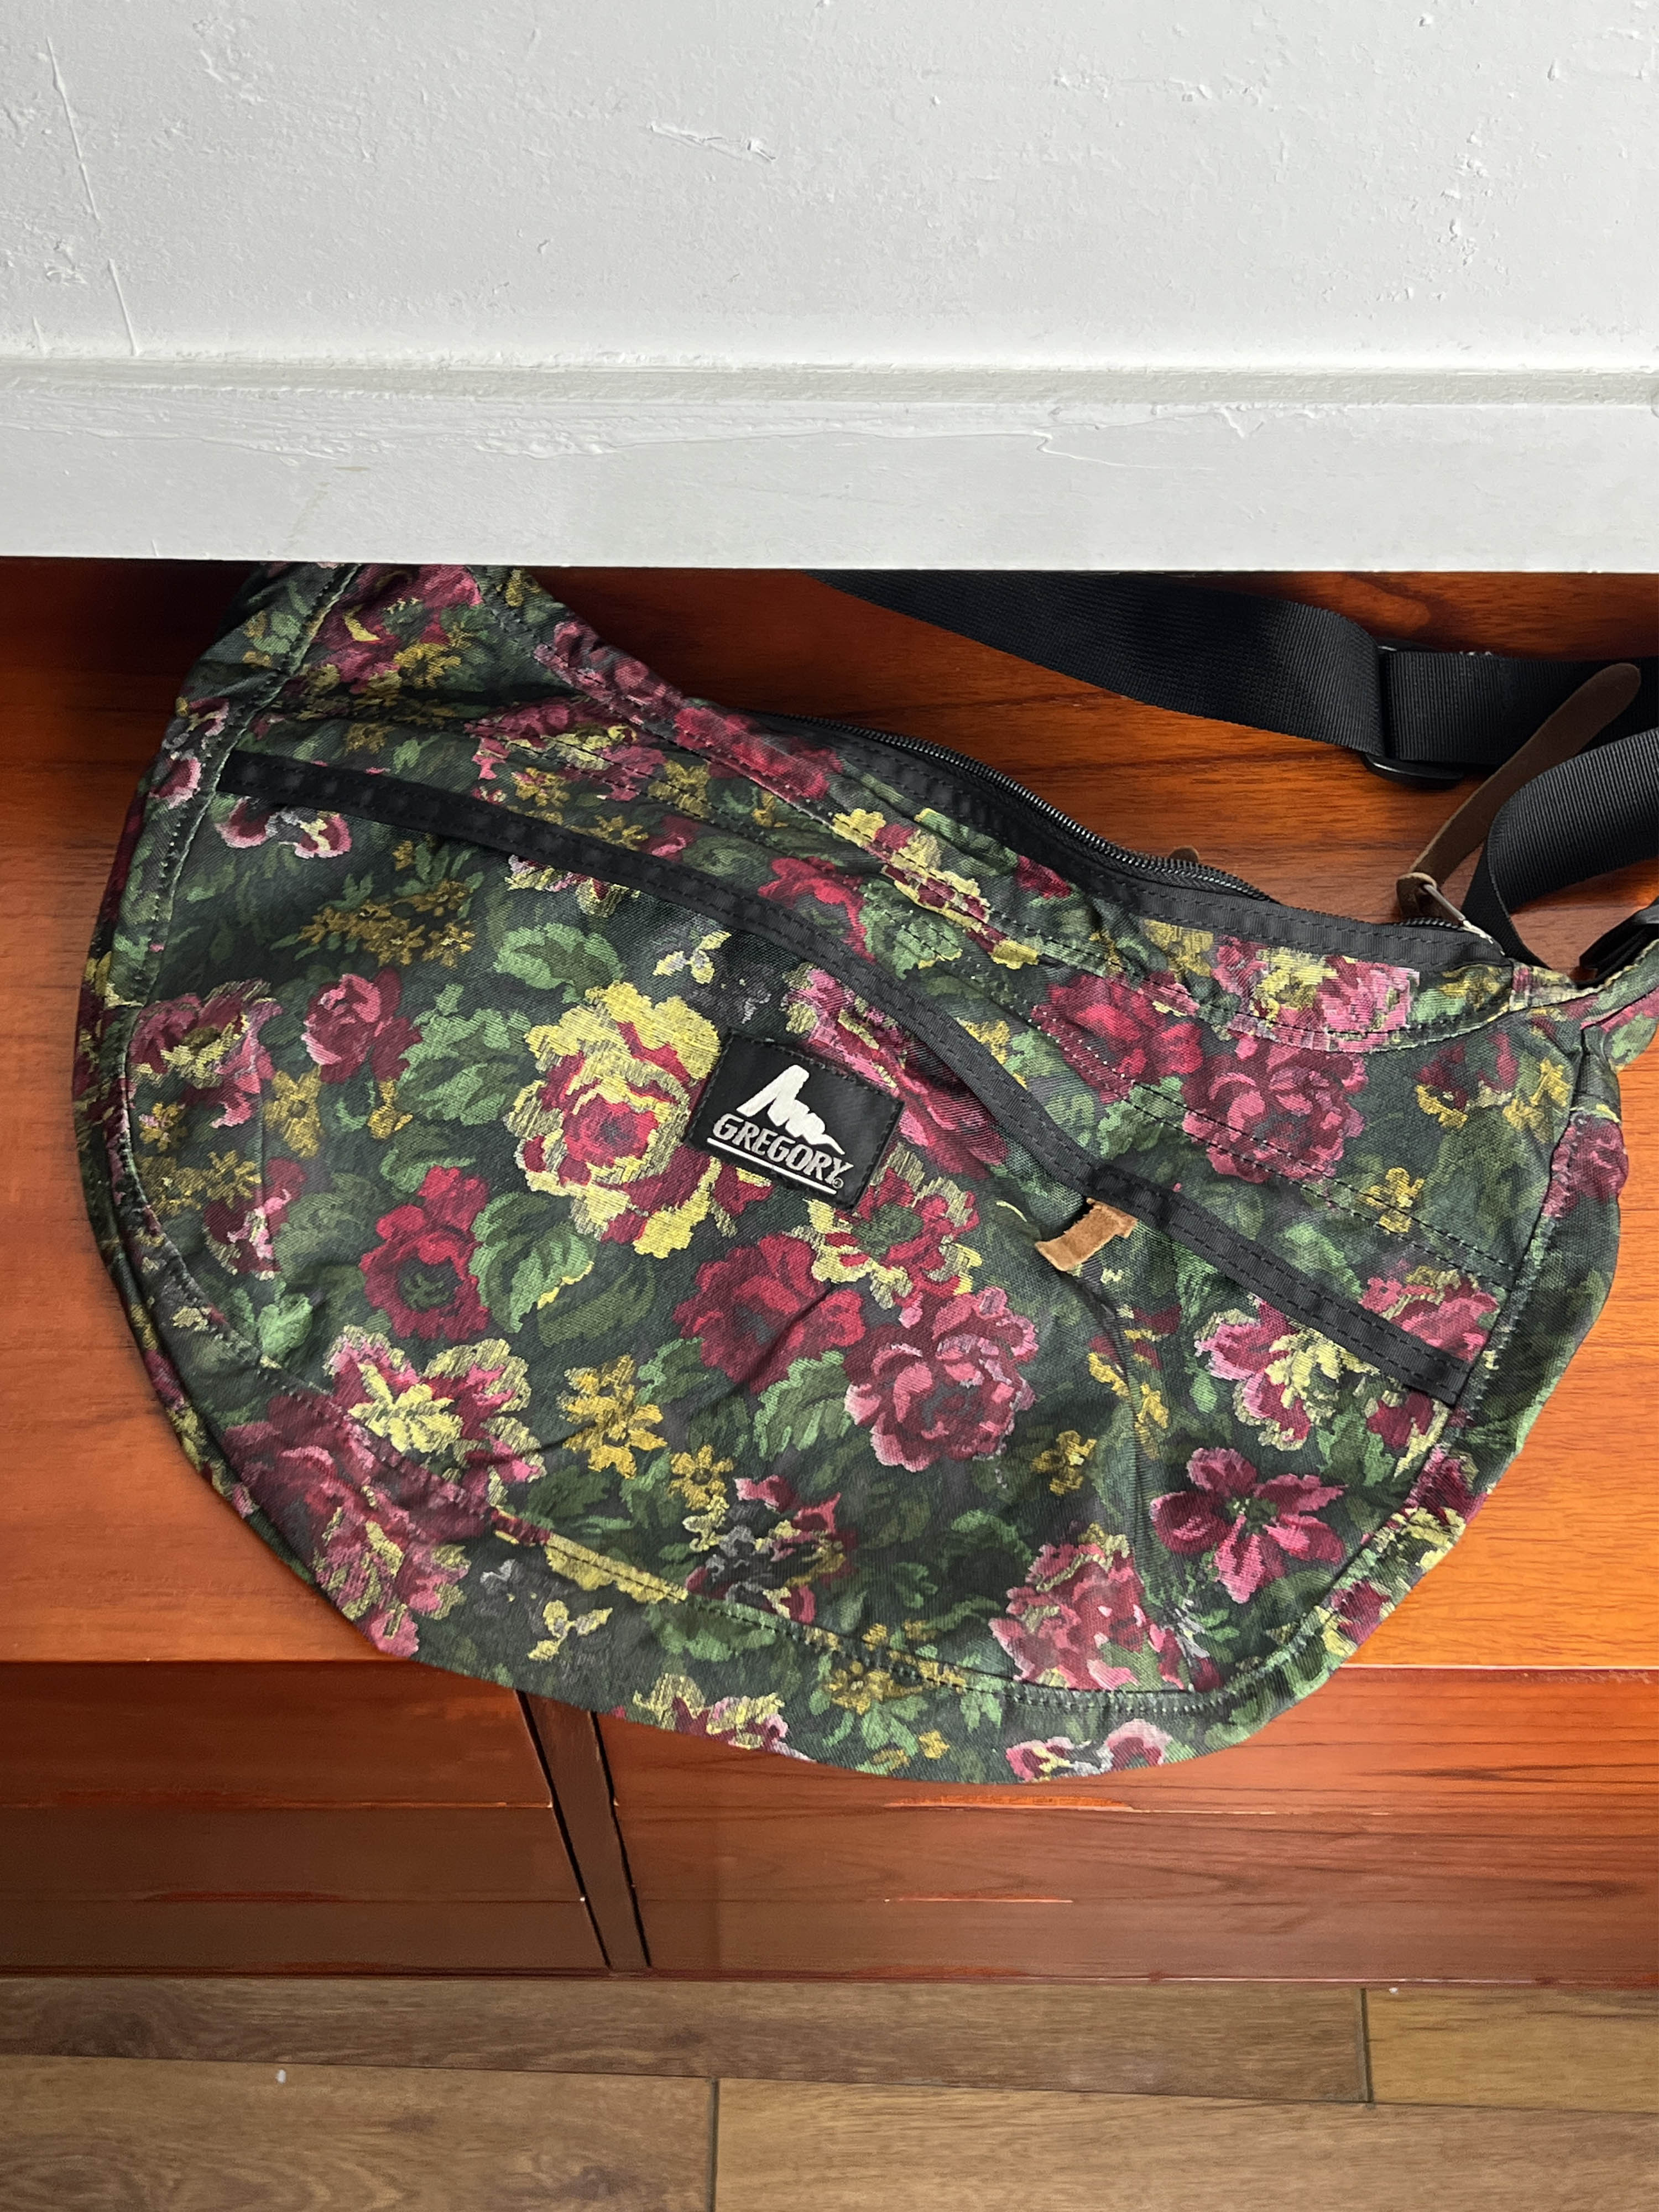 Gregory floral bag